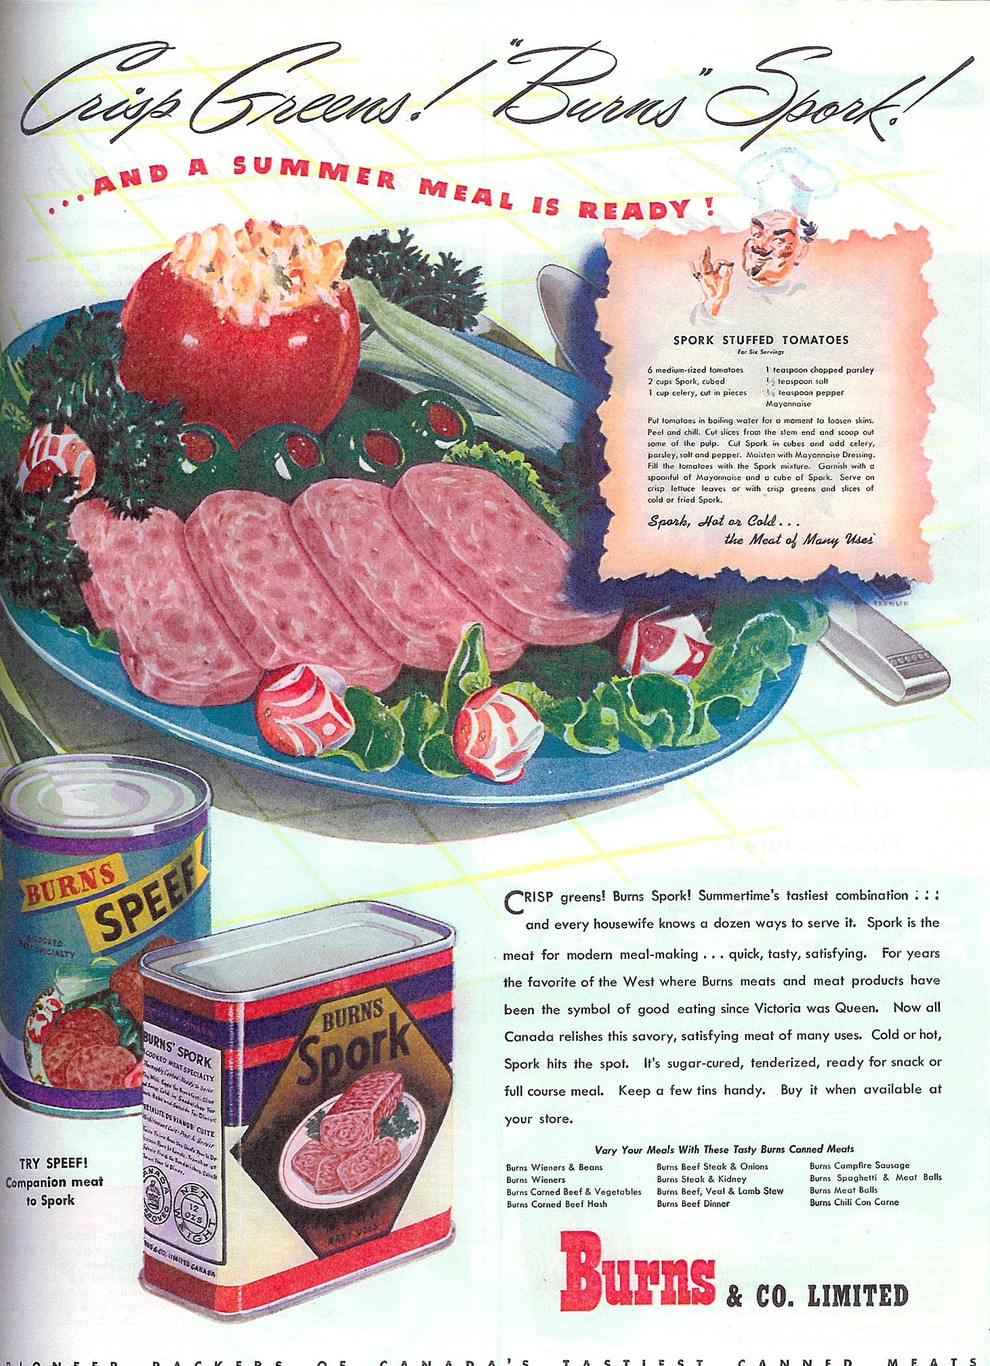 29 Disgusting Vintage Food Advertisements -DesignBump